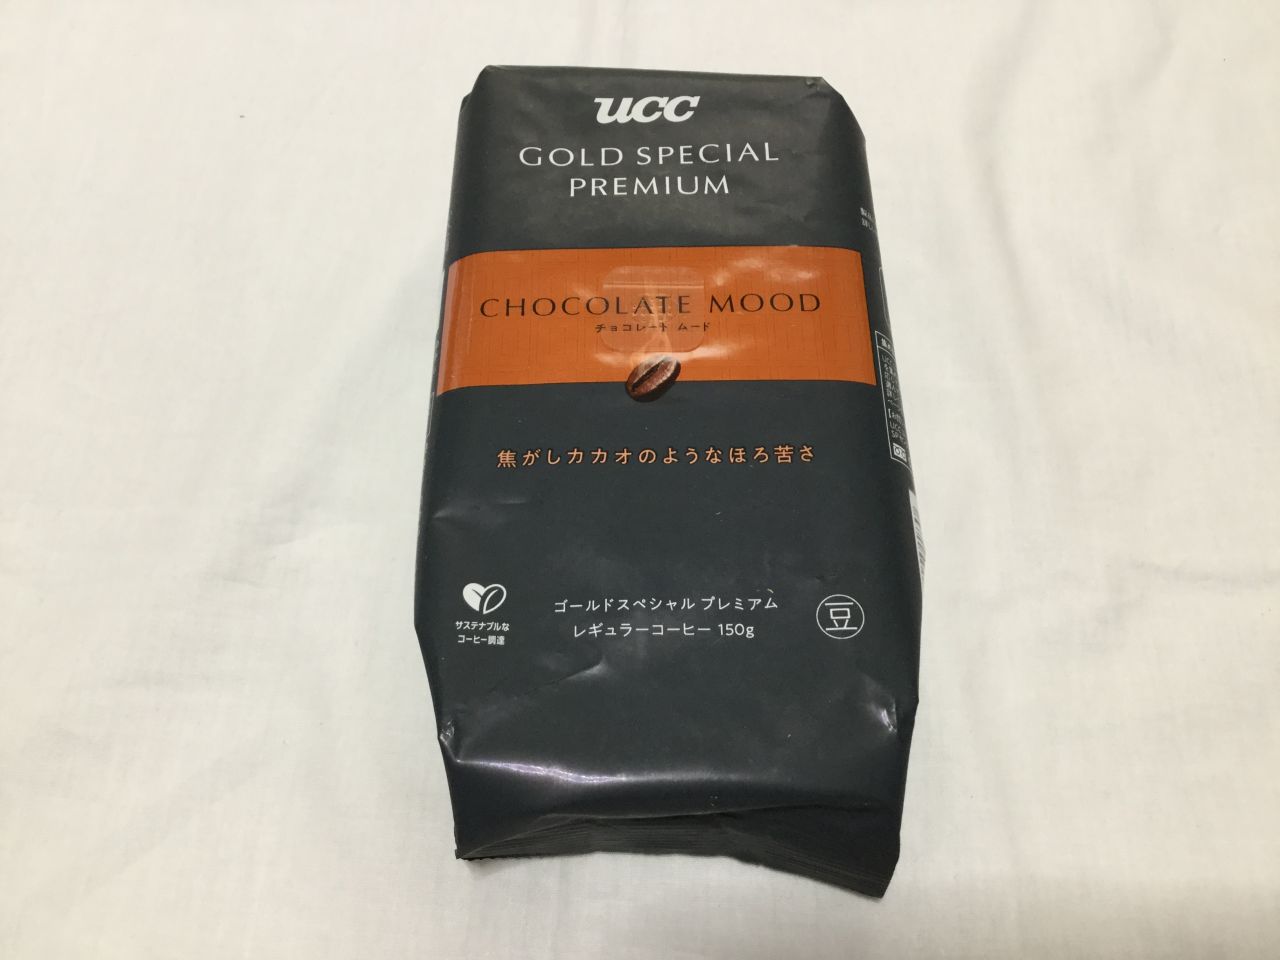 [おすすめコーヒー豆]UCC GOLD SPECIAL PREMIUM 炒り豆 チョコレートムード レビュー